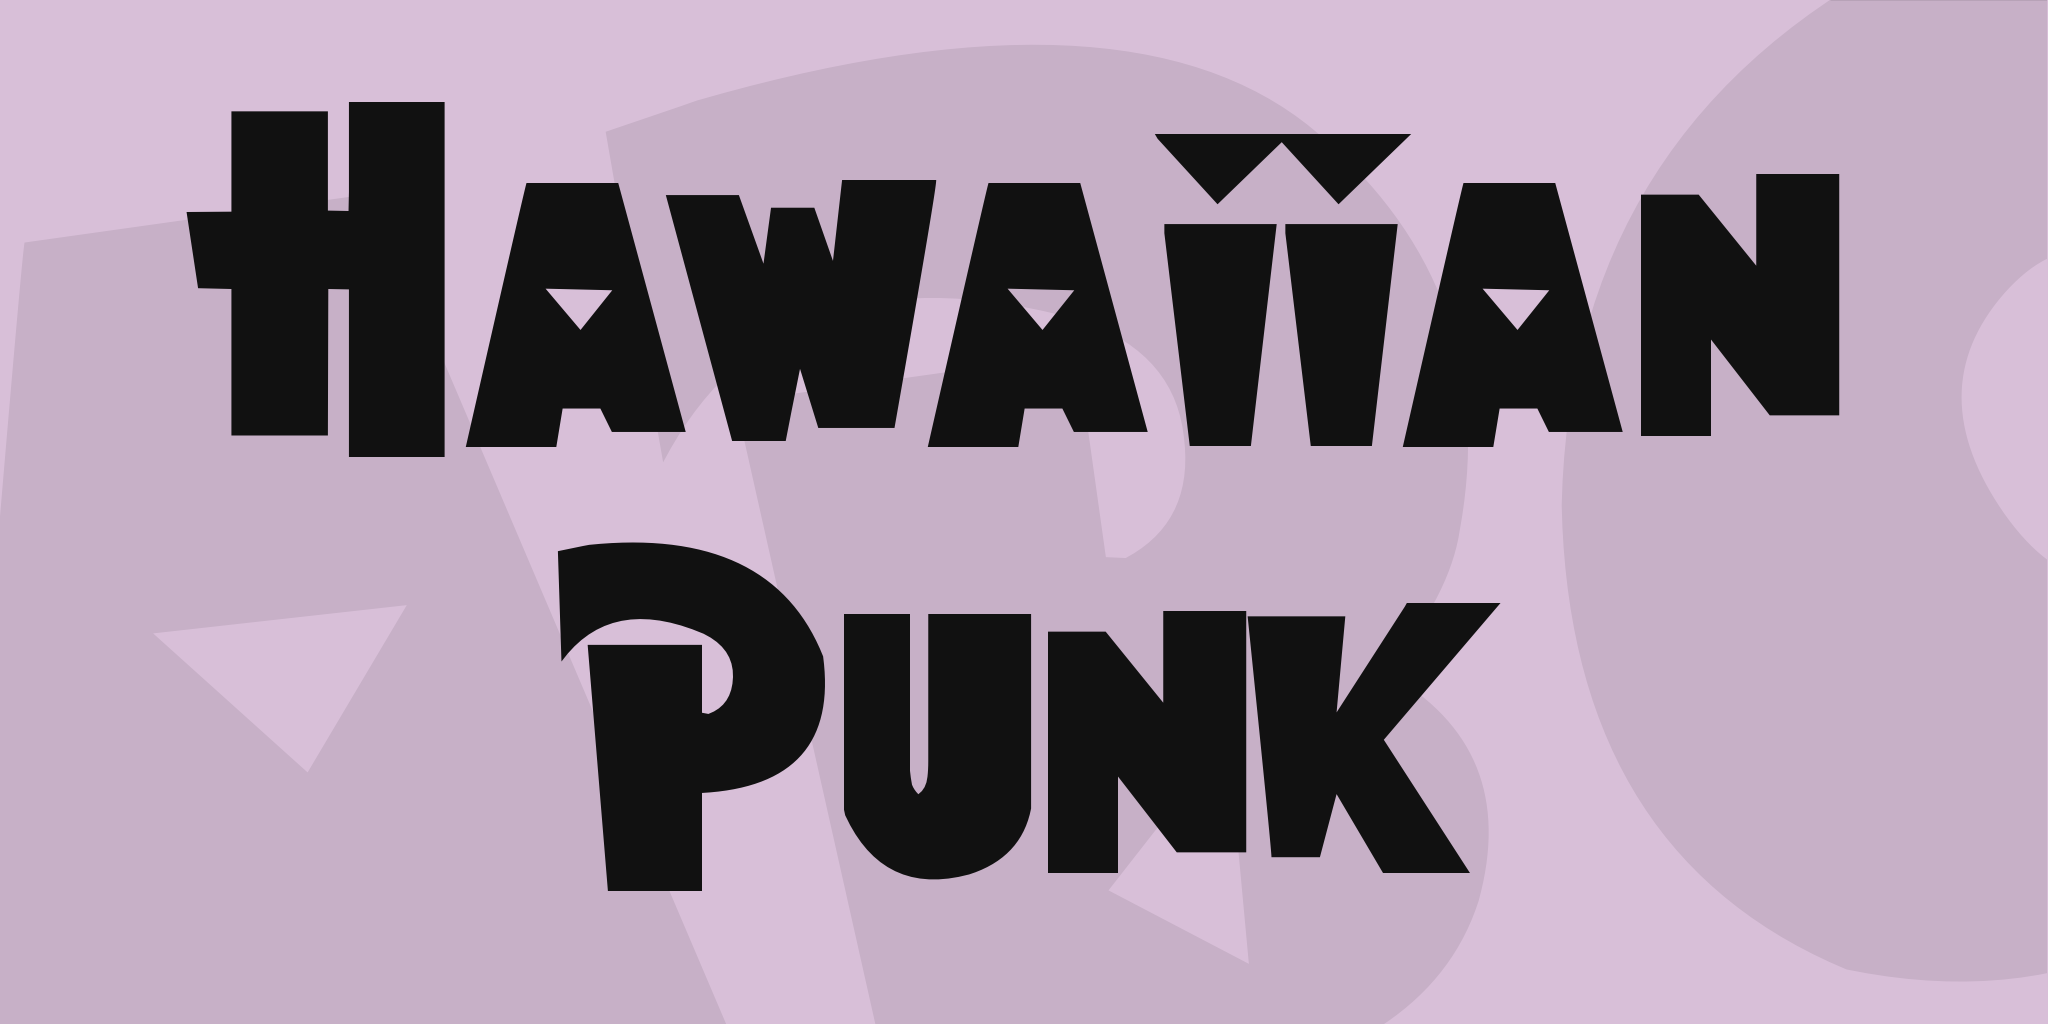 Hawaiian Punk